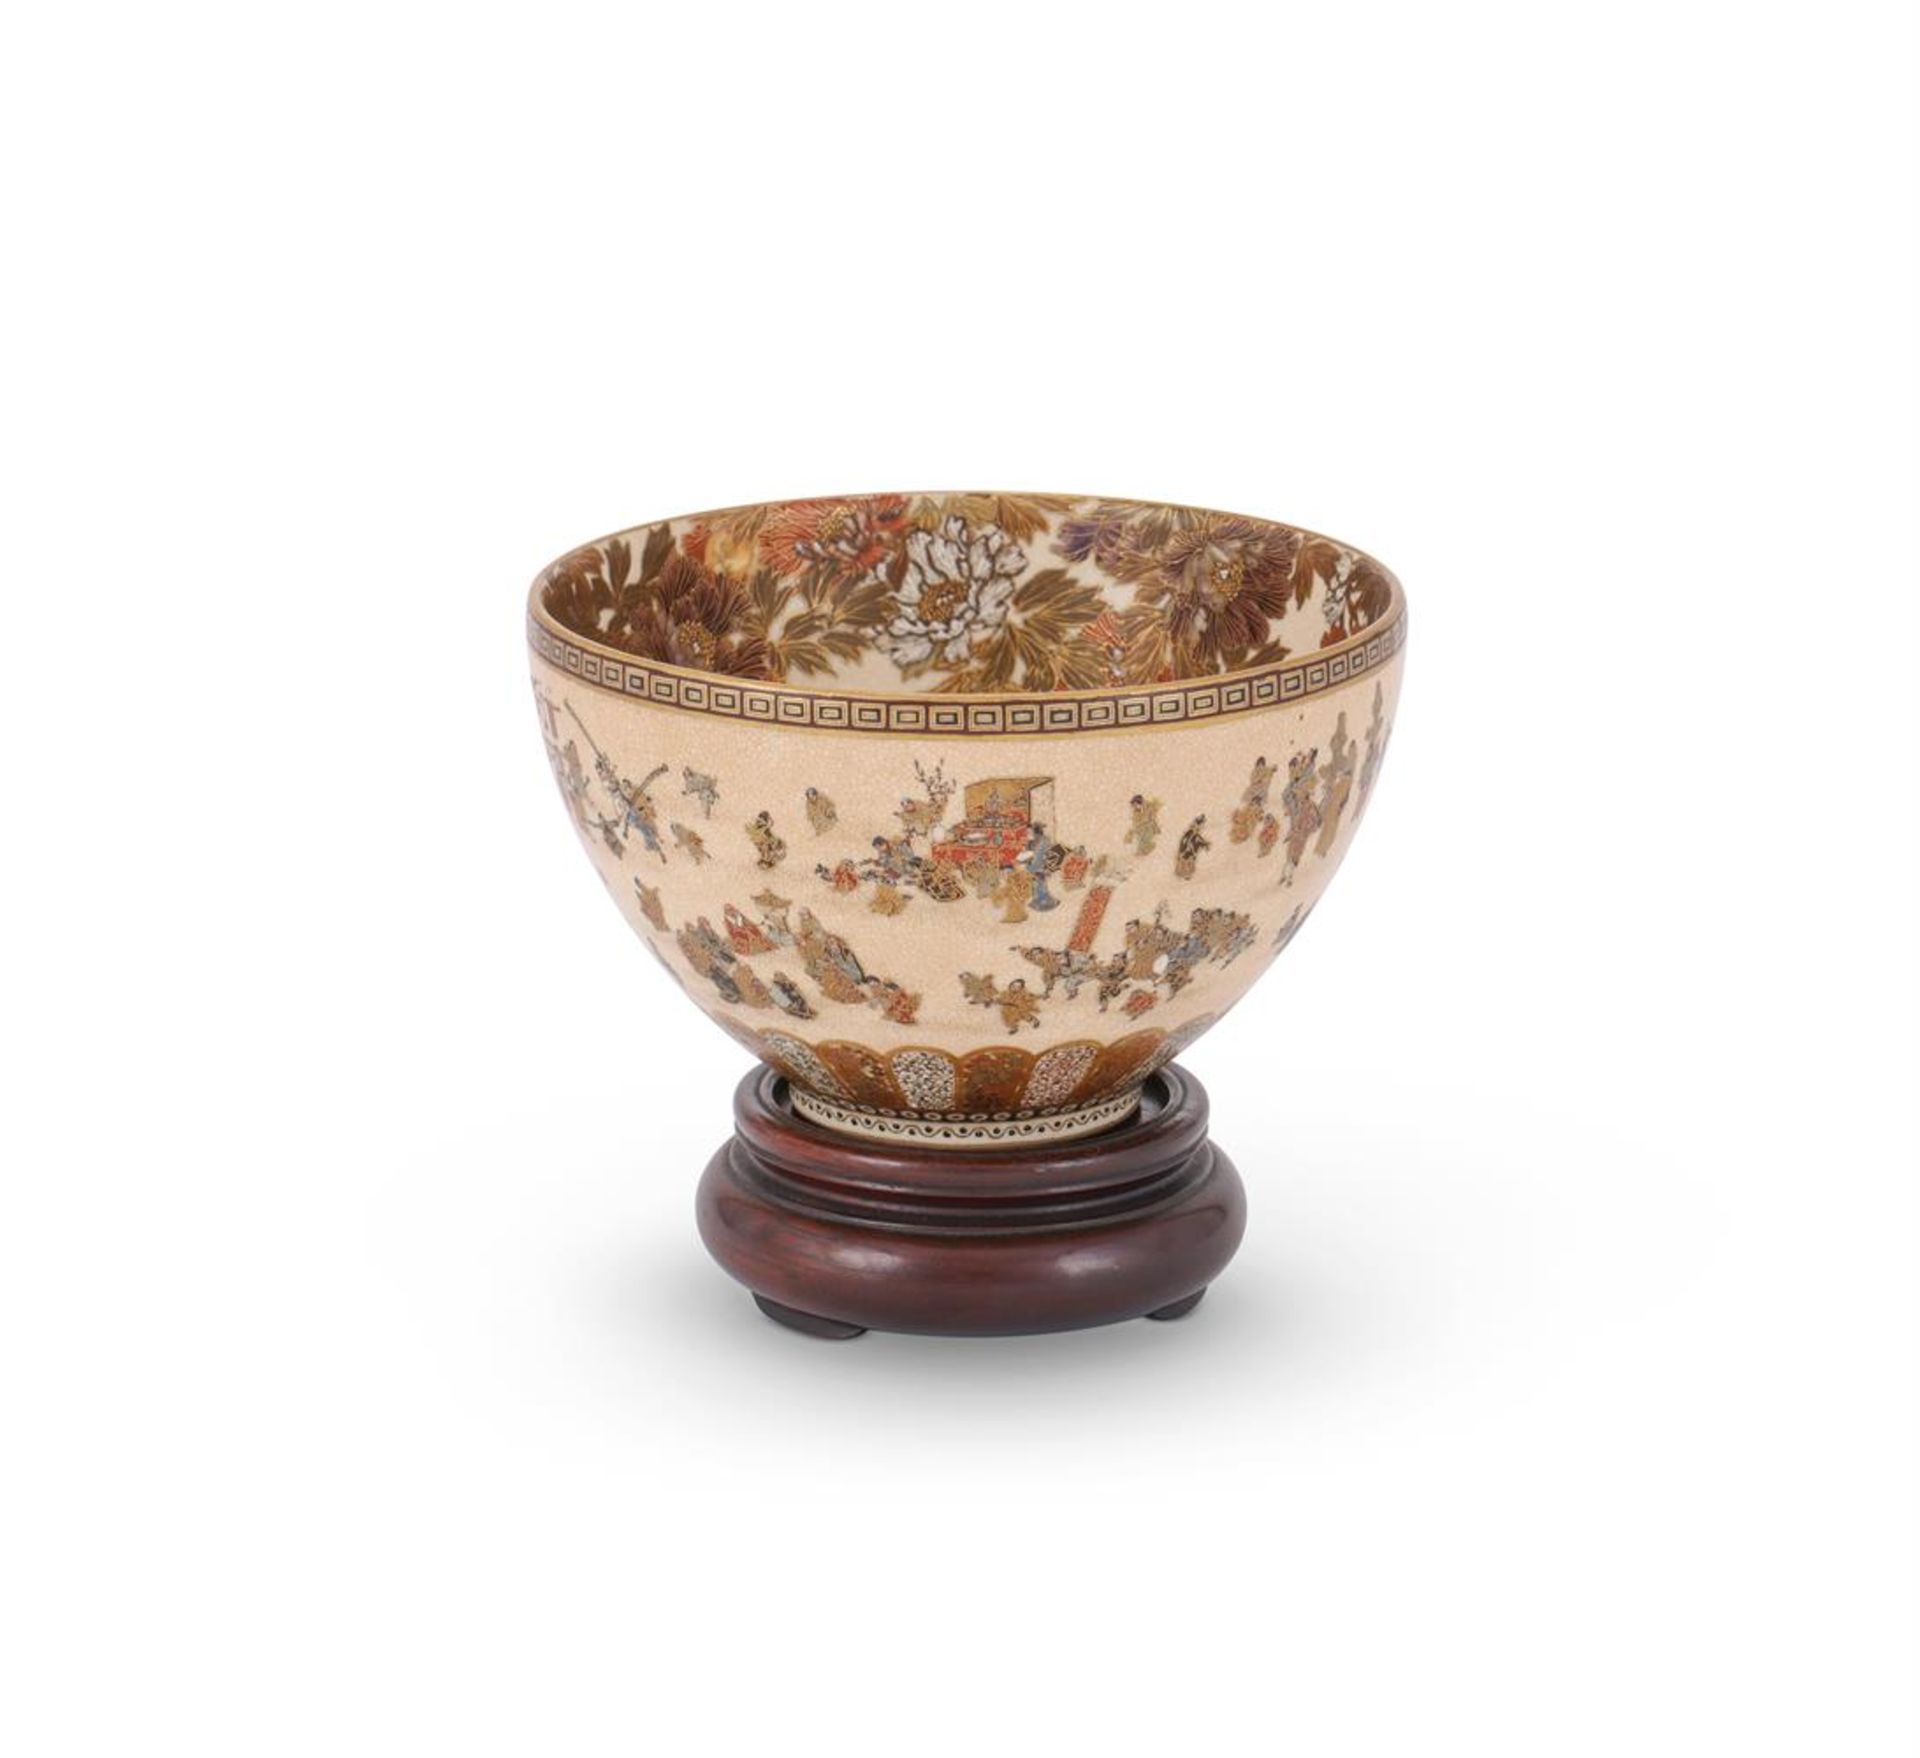 A Satsuma bowl by Yabu Meizan